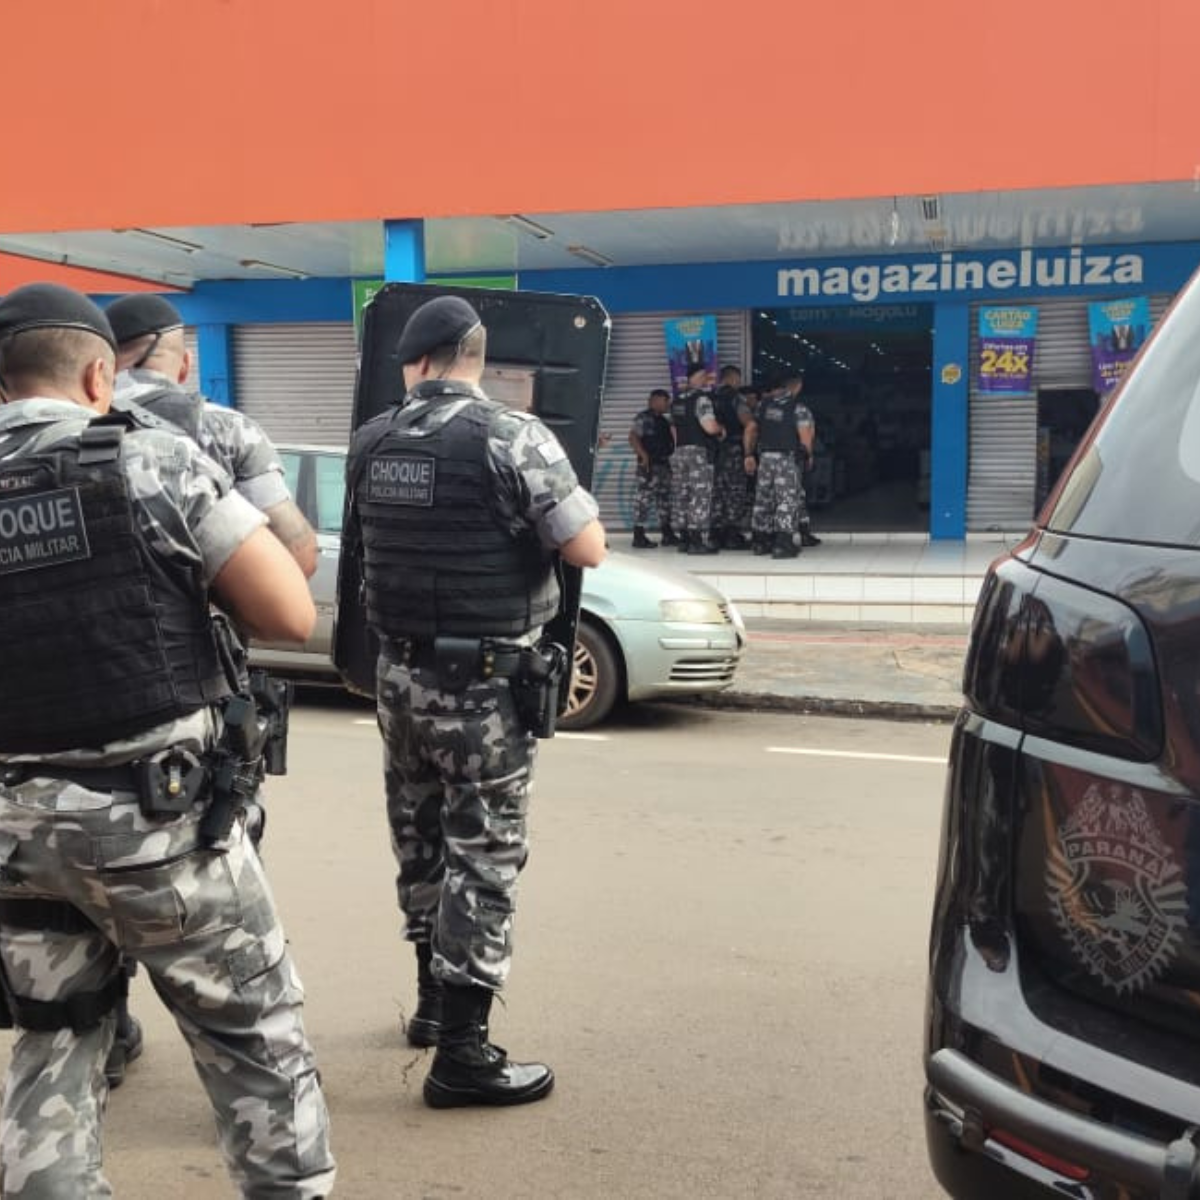  Criminosos armados invadem loja da Magazine Luiza e fazem reféns no PR 